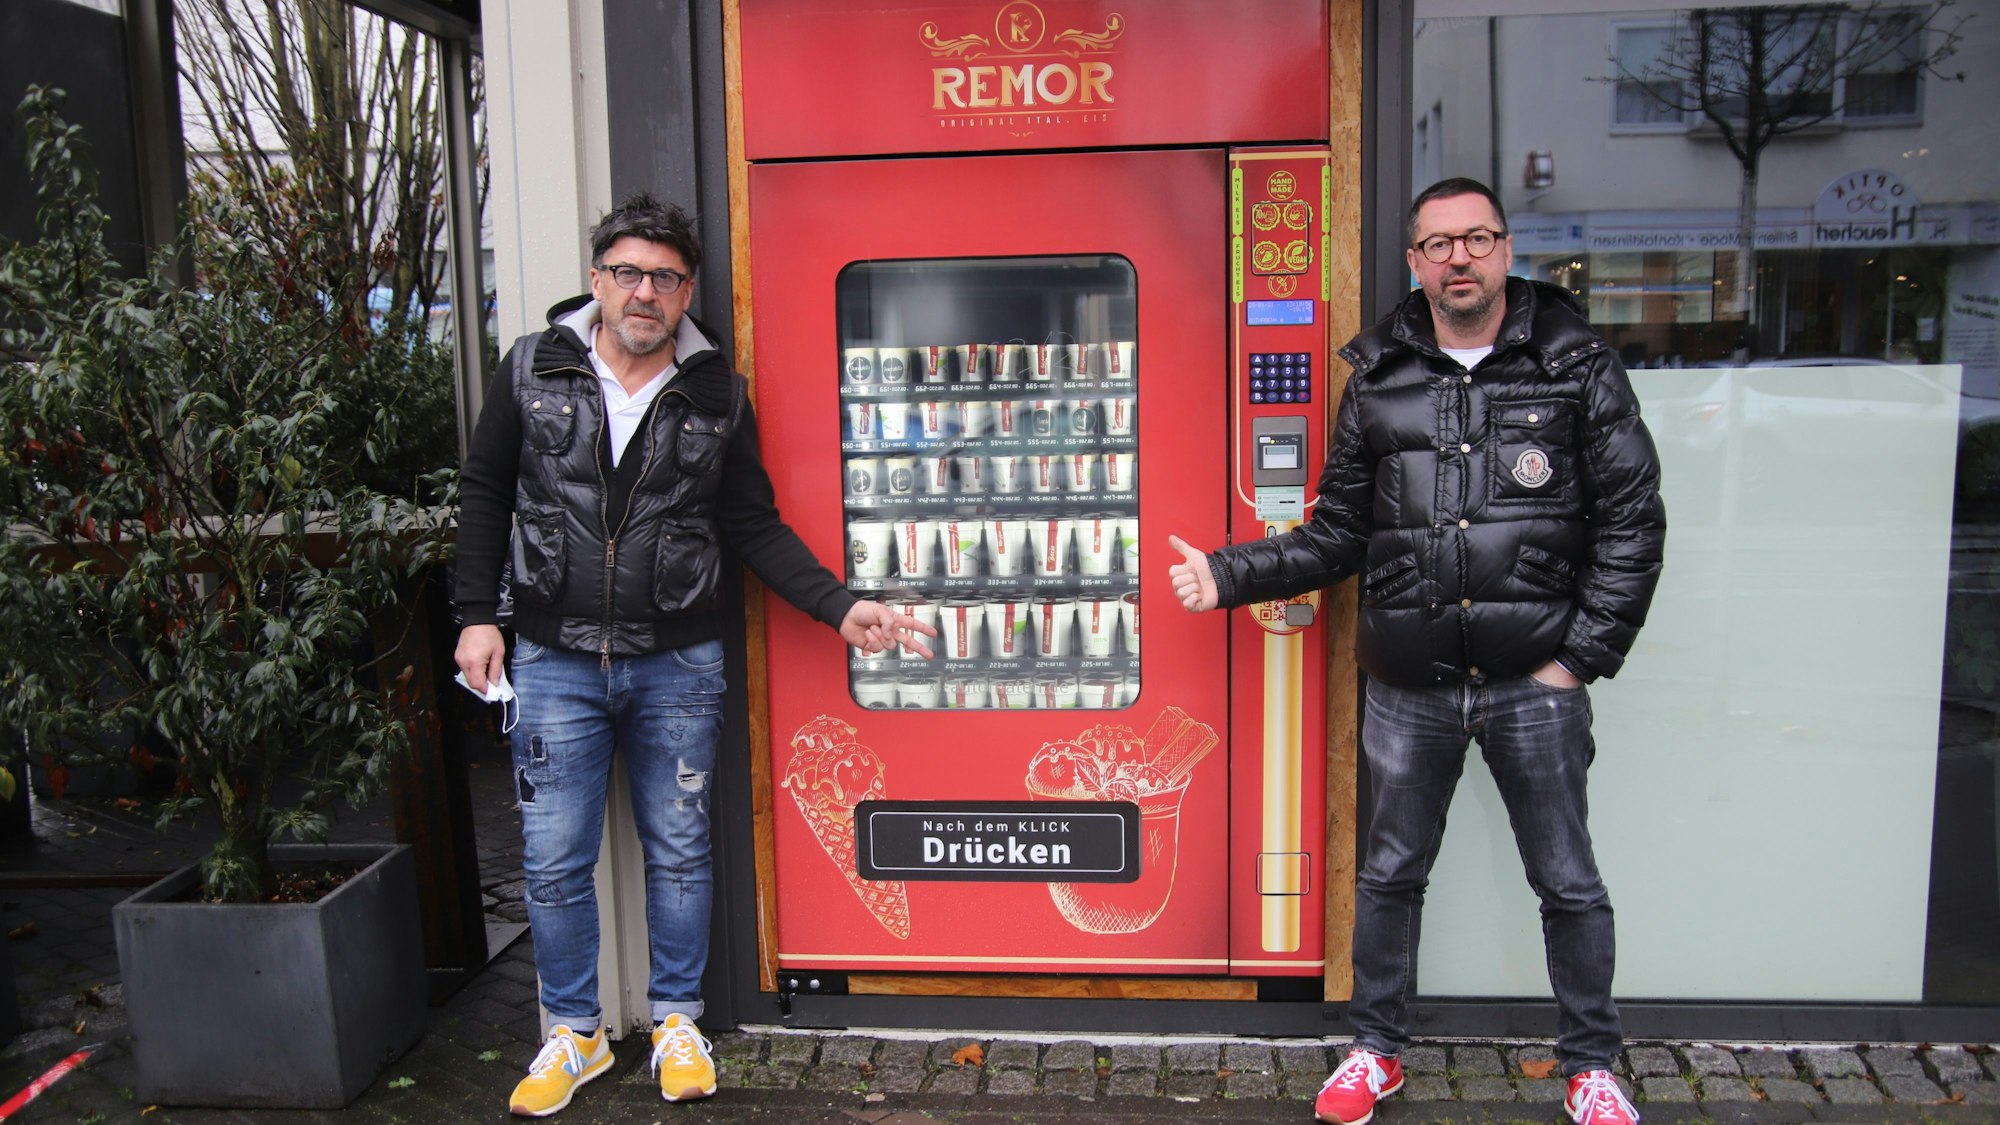 Die Brüder Rino und Massimo Remor verkaufen ihr selbstgemachtes Eis aus einem Eisautomaten heraus. Sie stehen beide davor und zeigen auf den Automaten.